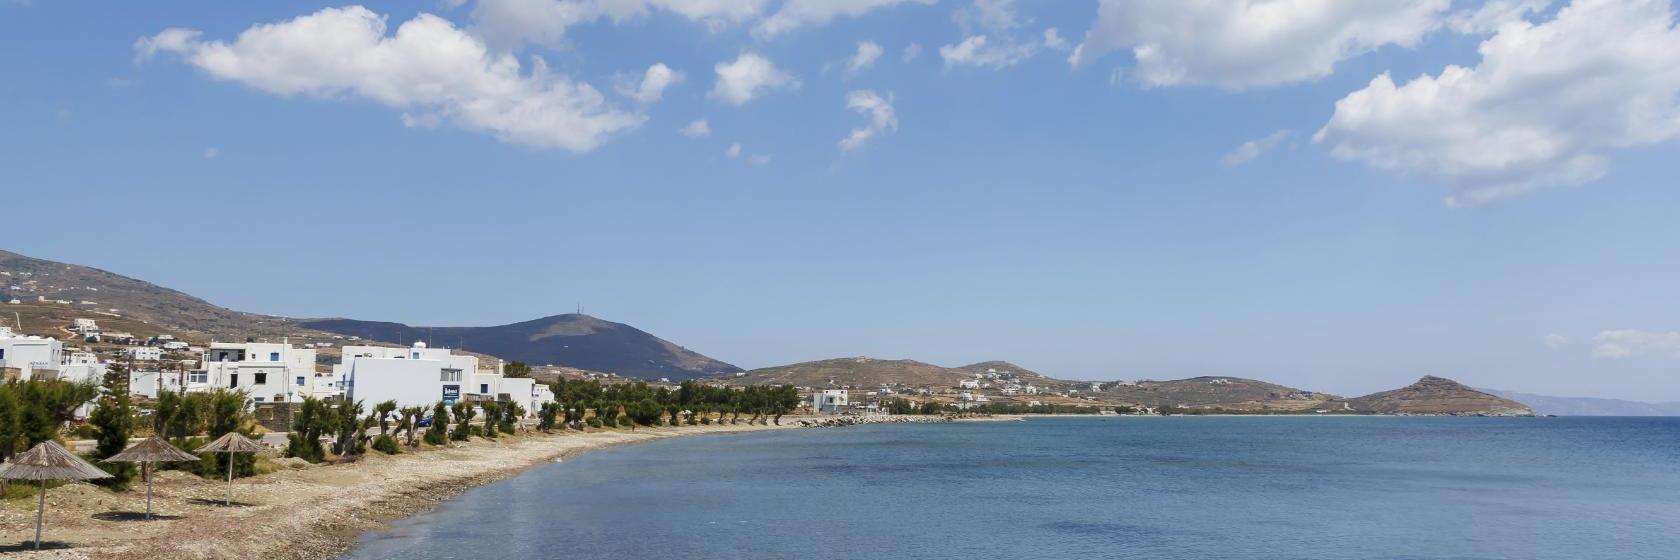 Tinos Agios Sostis Beach